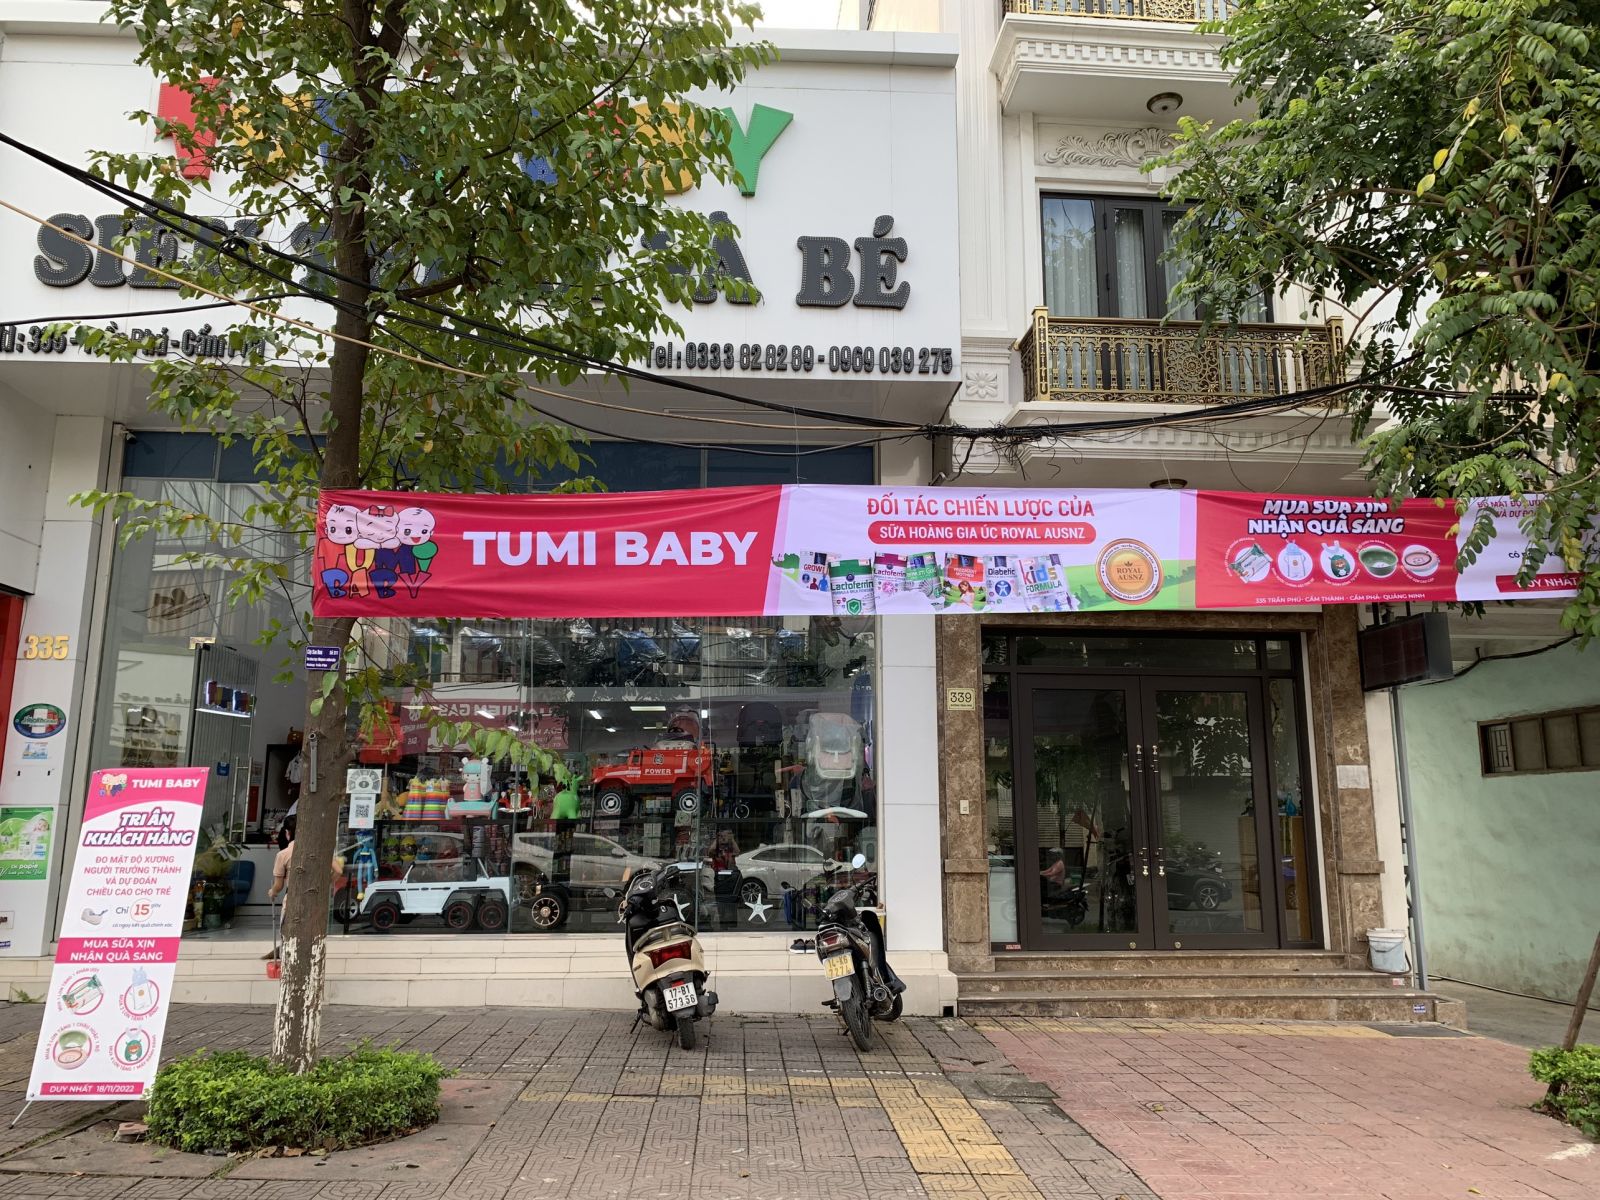 Sữa Hoàng Gia và hành trình Trade & Show tri ân khách hàng tại Tumi Baby Shop Quảng Ninh